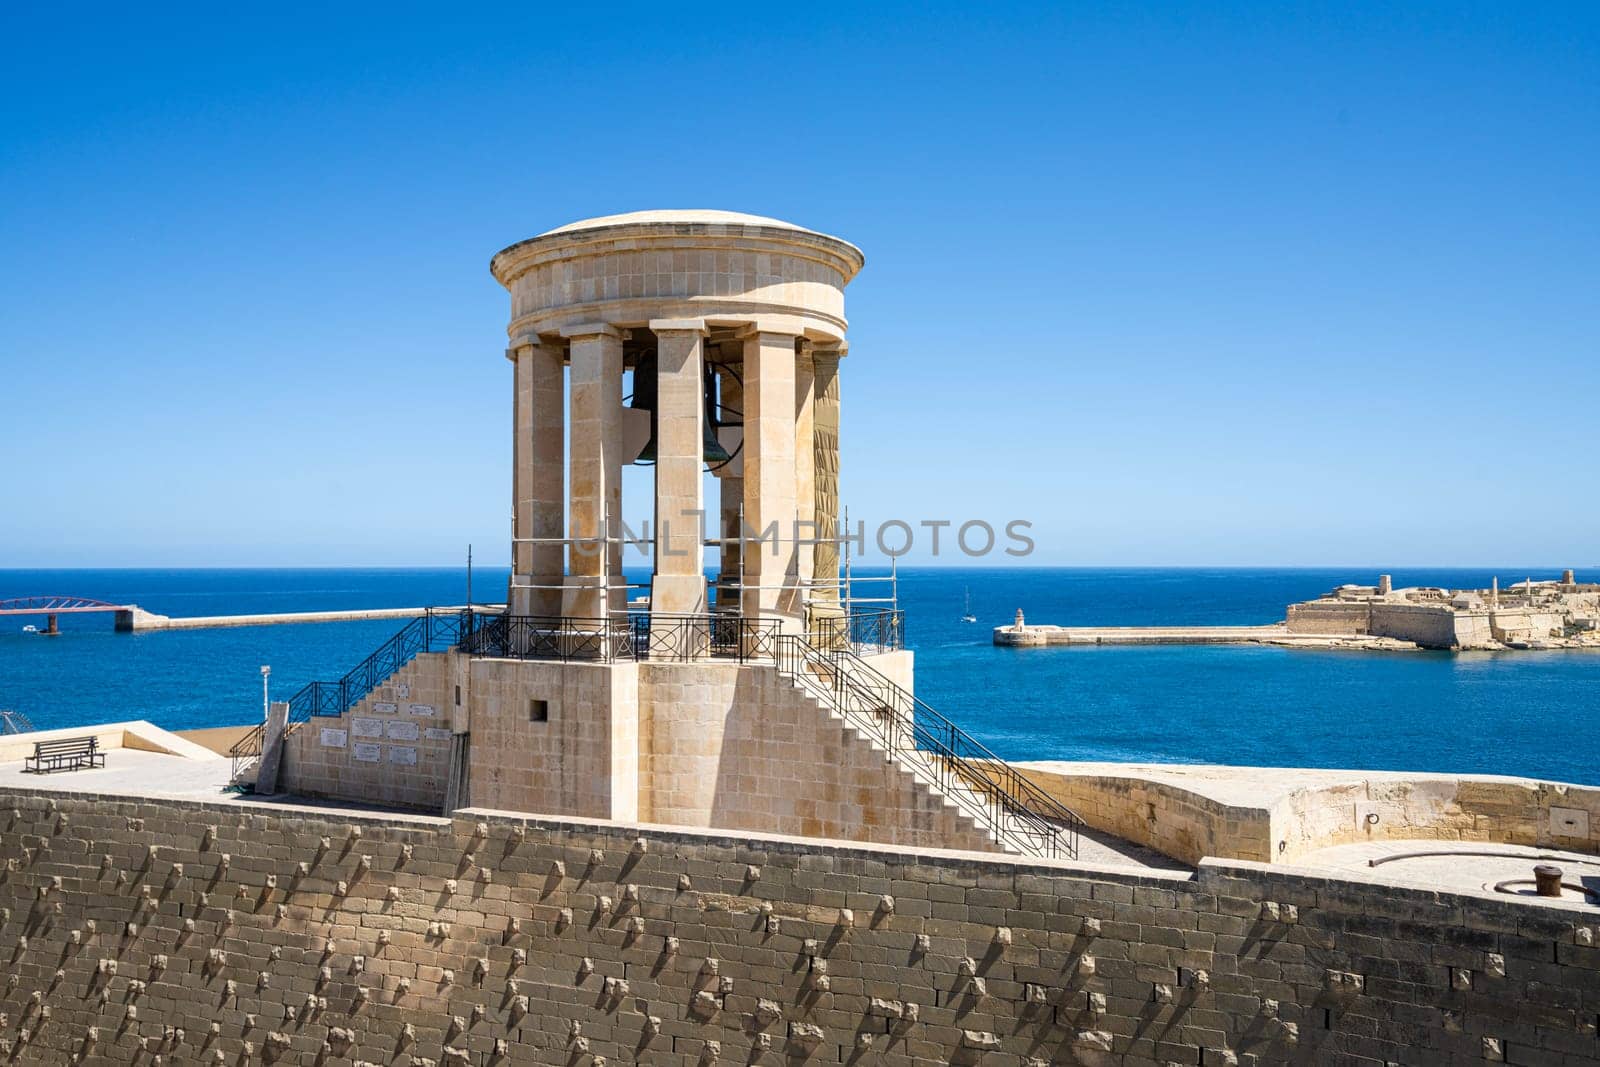 Siege Bell War Memorial in Valletta, Malta by sergiodv